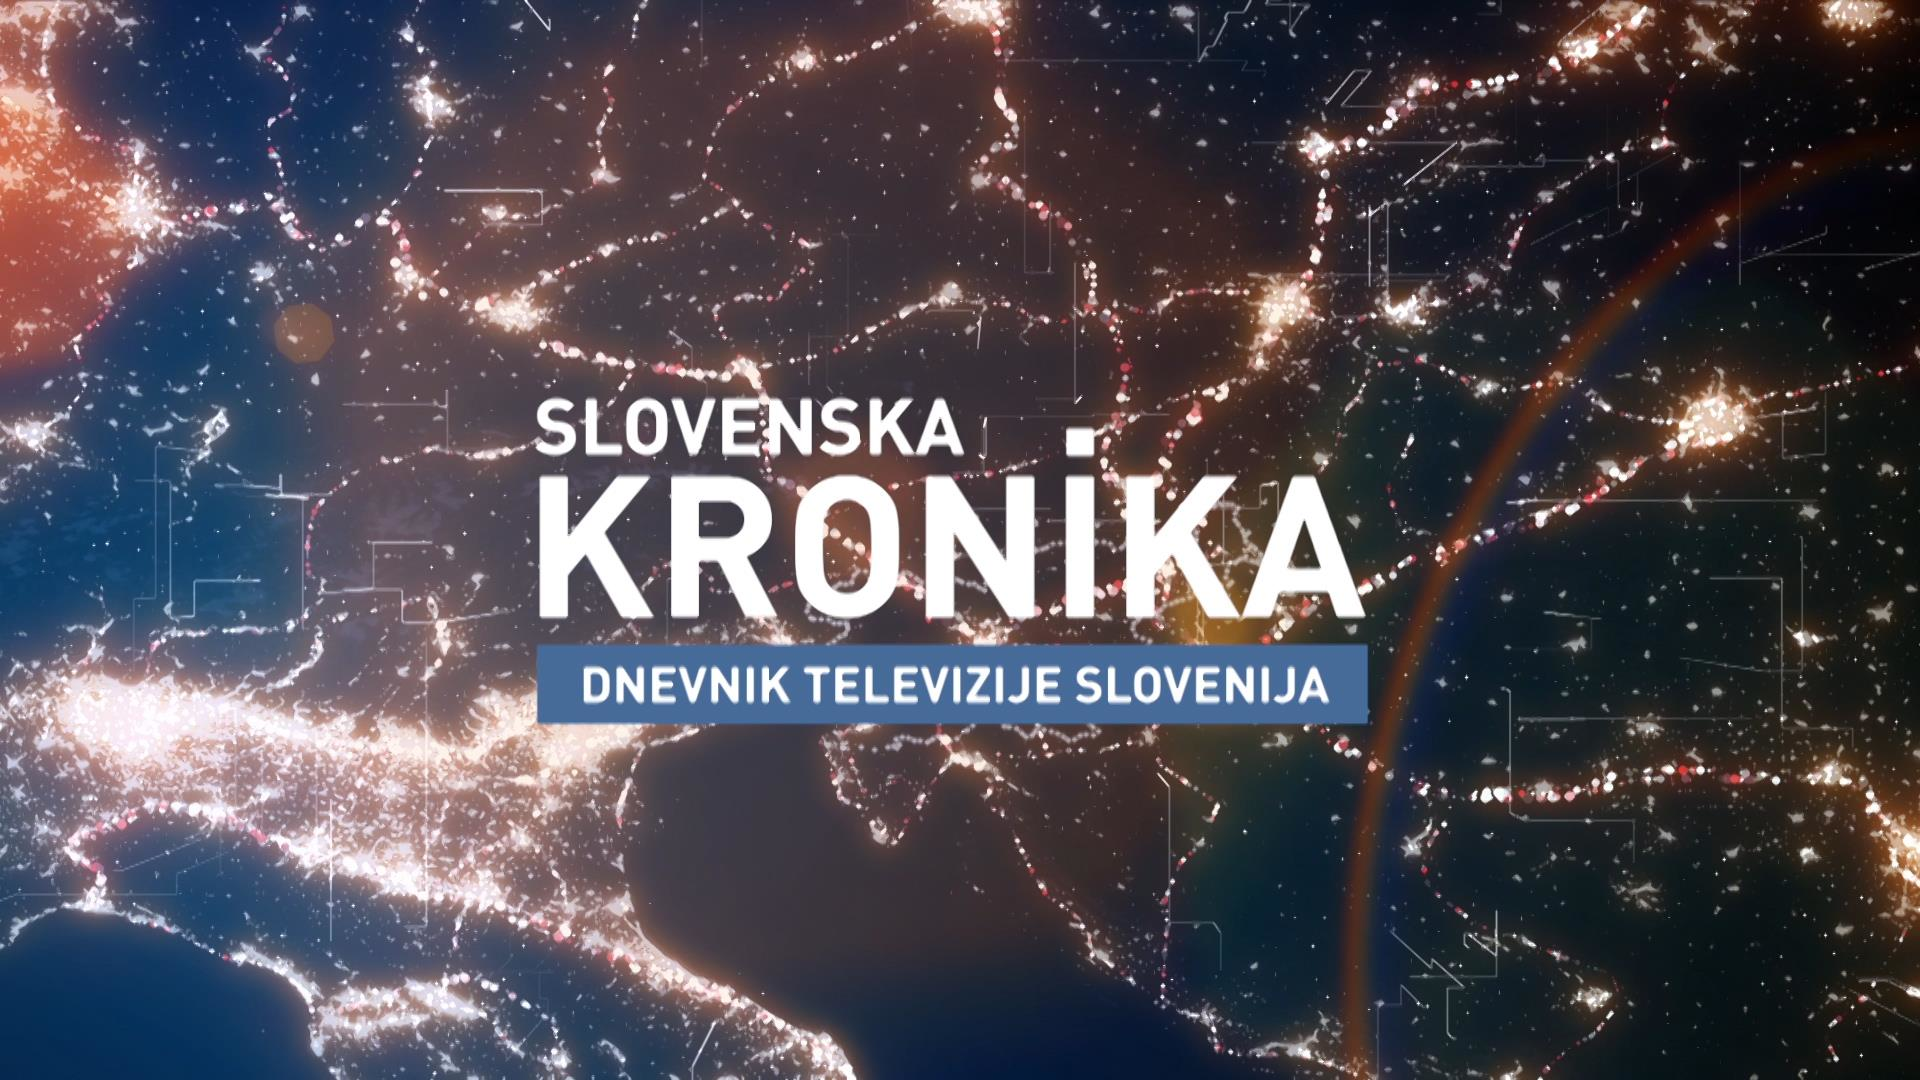 Slovenska kronika s slovenskim znakovnim jezikom